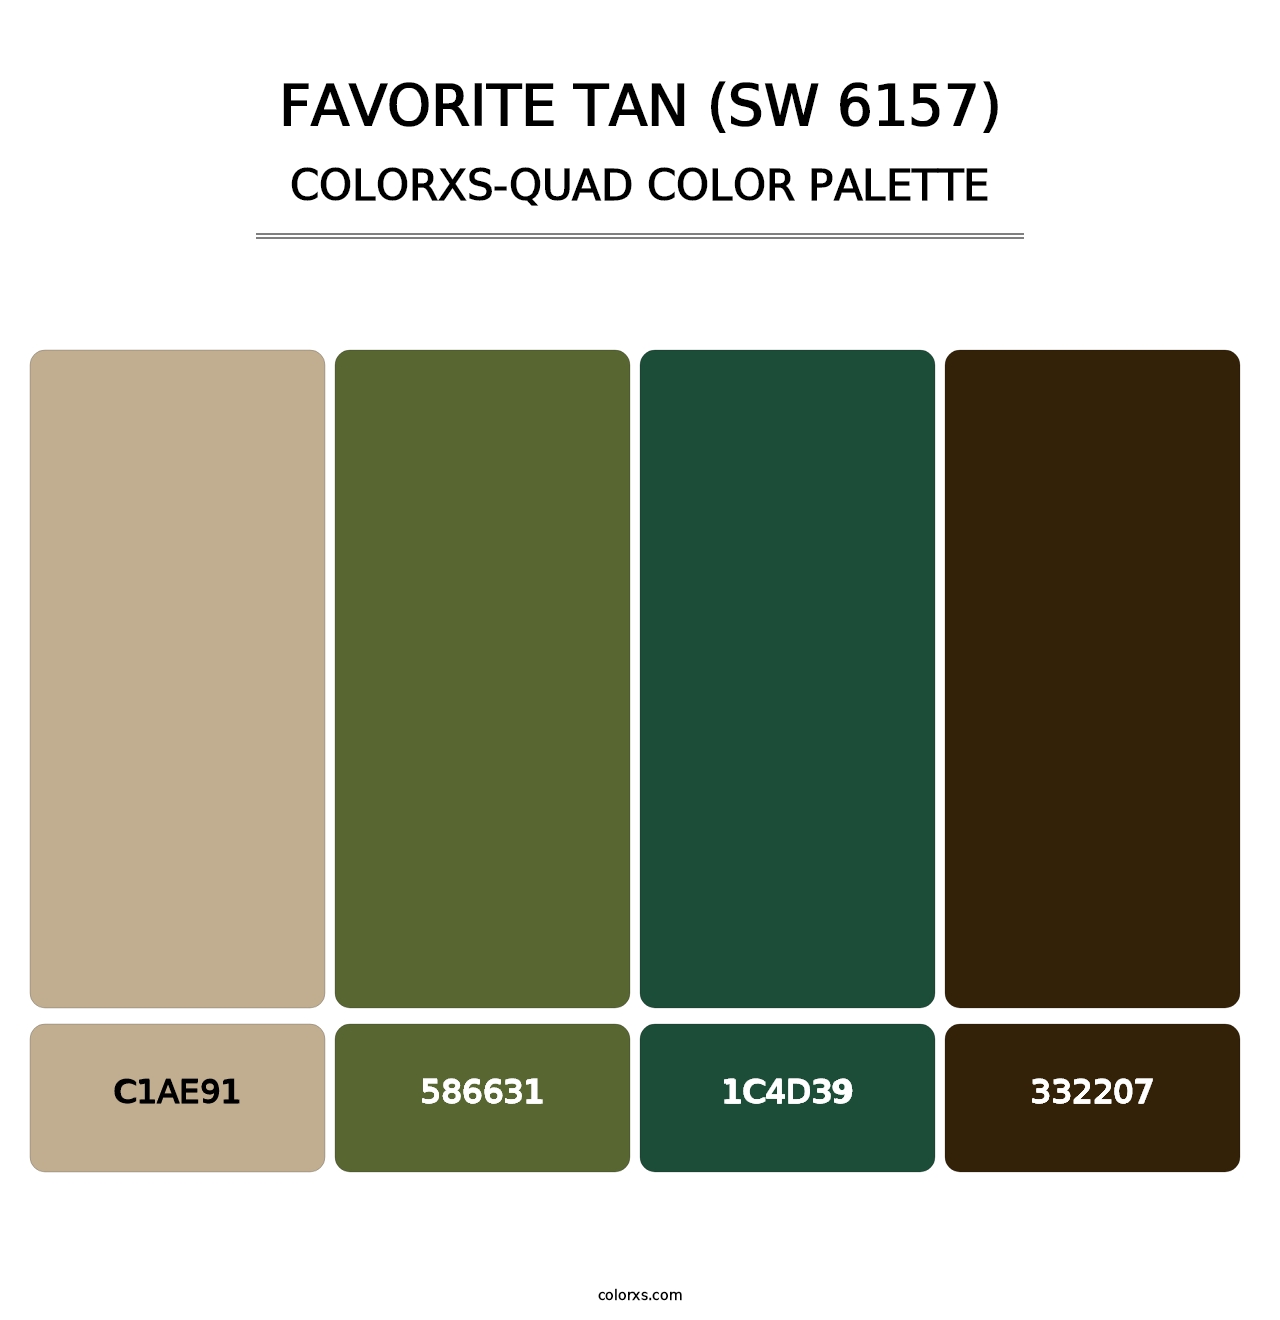 Favorite Tan (SW 6157) - Colorxs Quad Palette